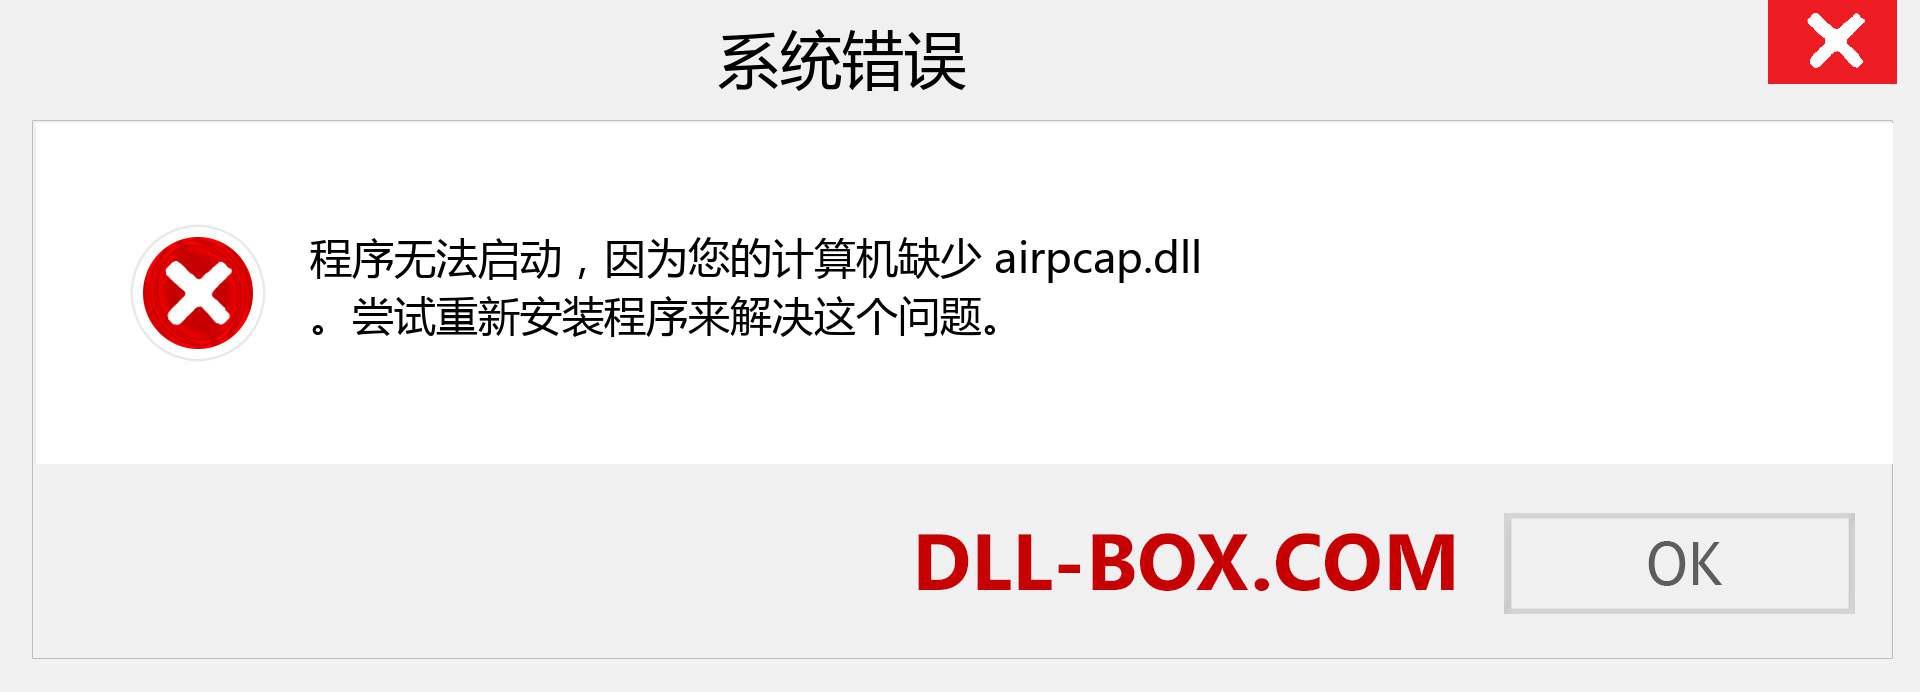 airpcap.dll 文件丢失？。 适用于 Windows 7、8、10 的下载 - 修复 Windows、照片、图像上的 airpcap dll 丢失错误